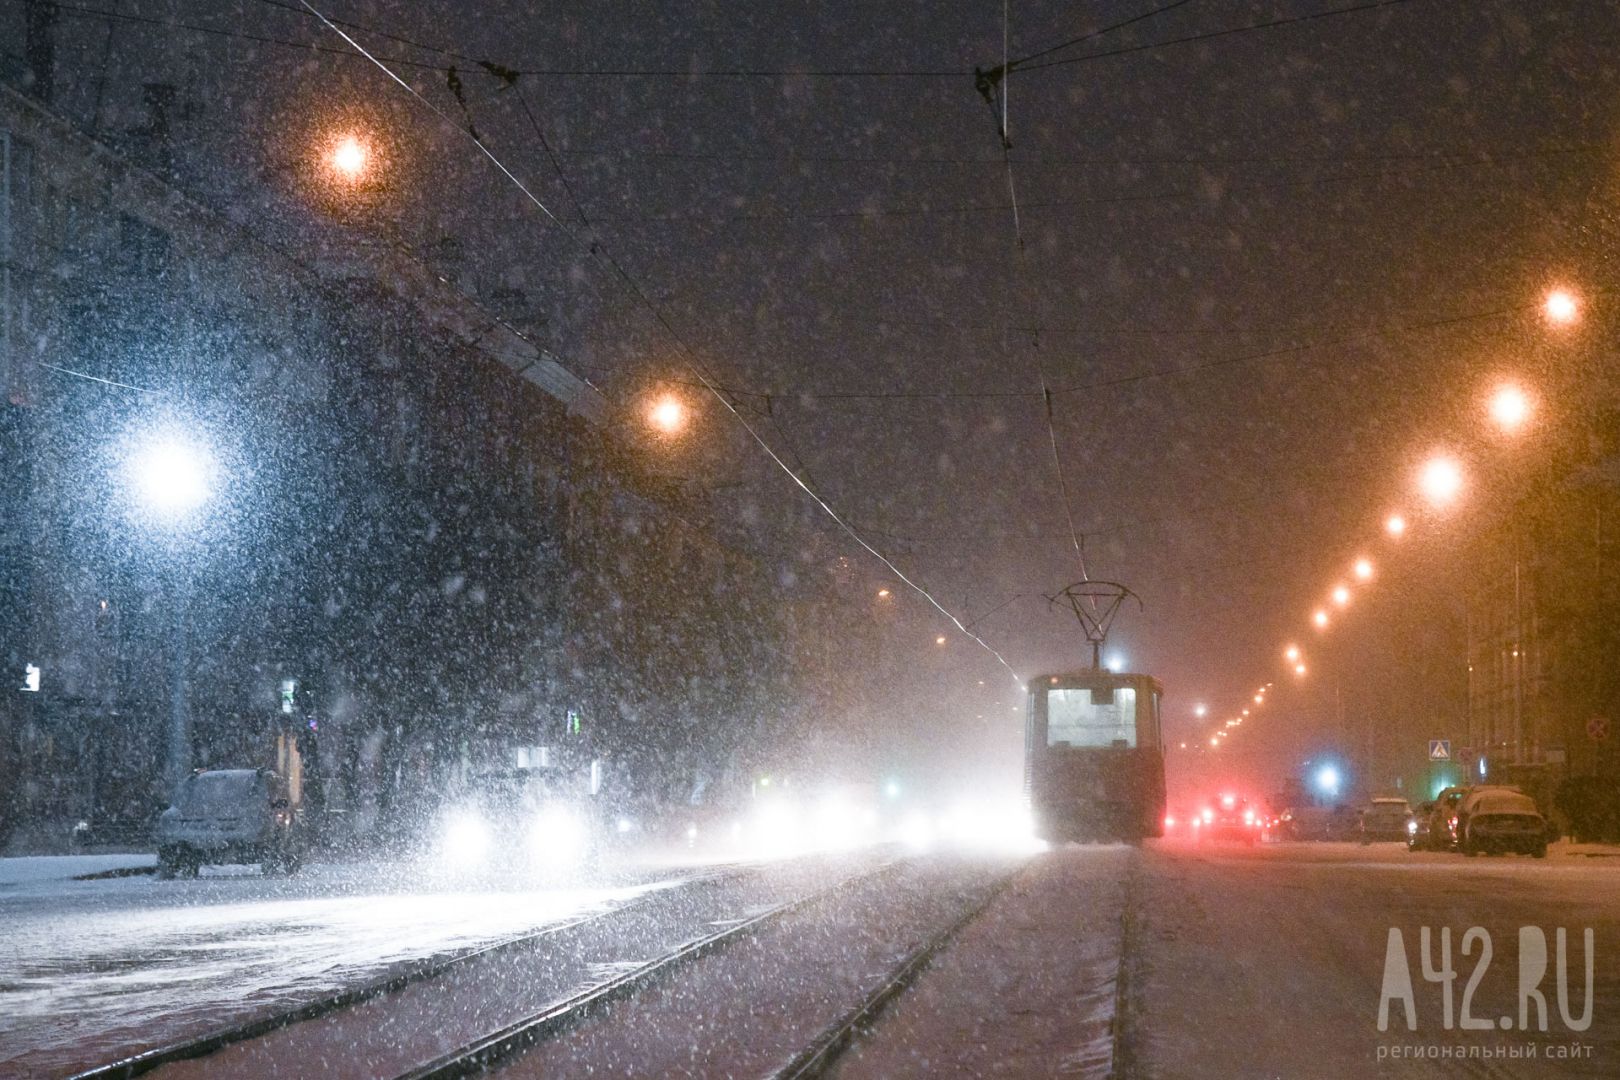 В Кузбассе застрявший на рельсах автомобиль заблокировал проезд трамваю